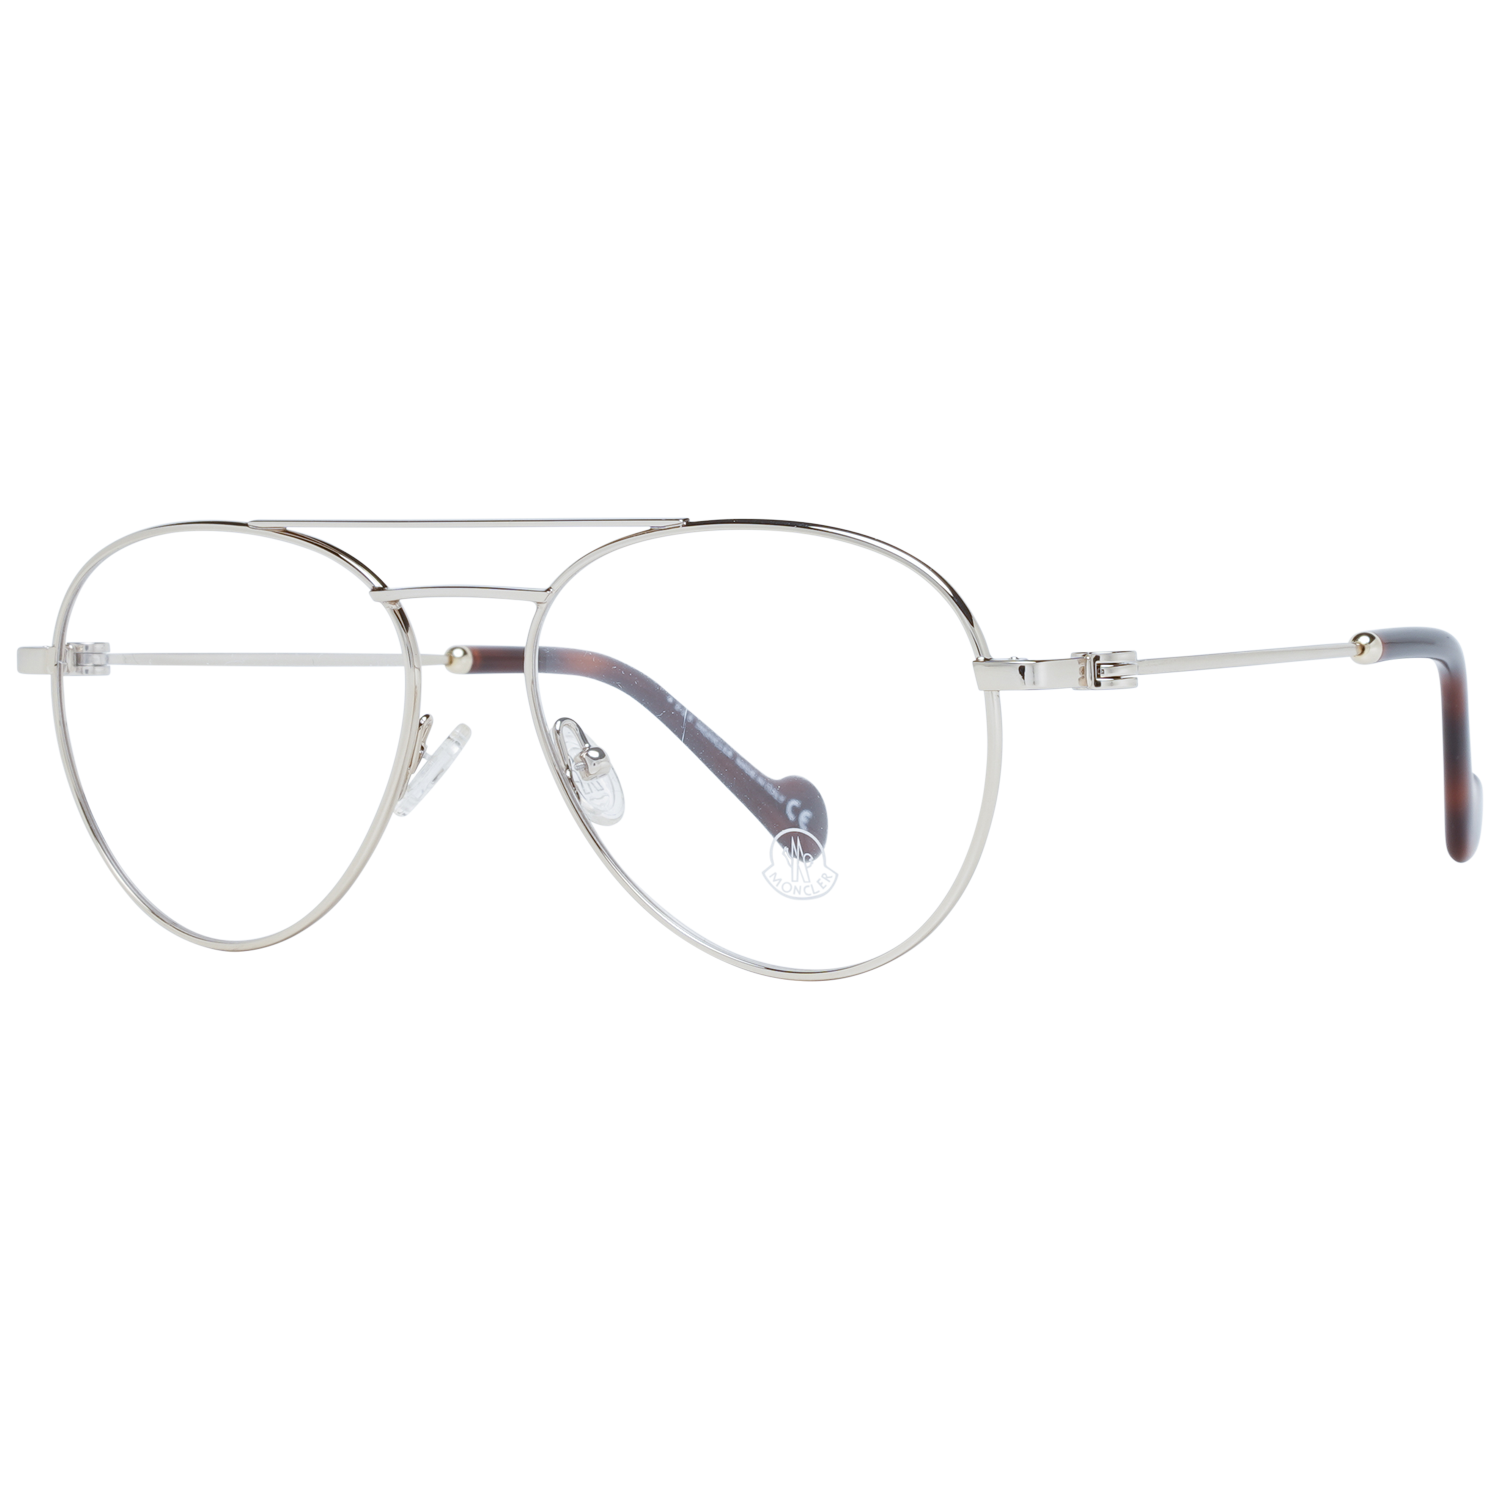 Moncler Eyeglasses Moncler Glasses Frames ML5023 032 54mm Eyeglasses Eyewear UK USA Australia 